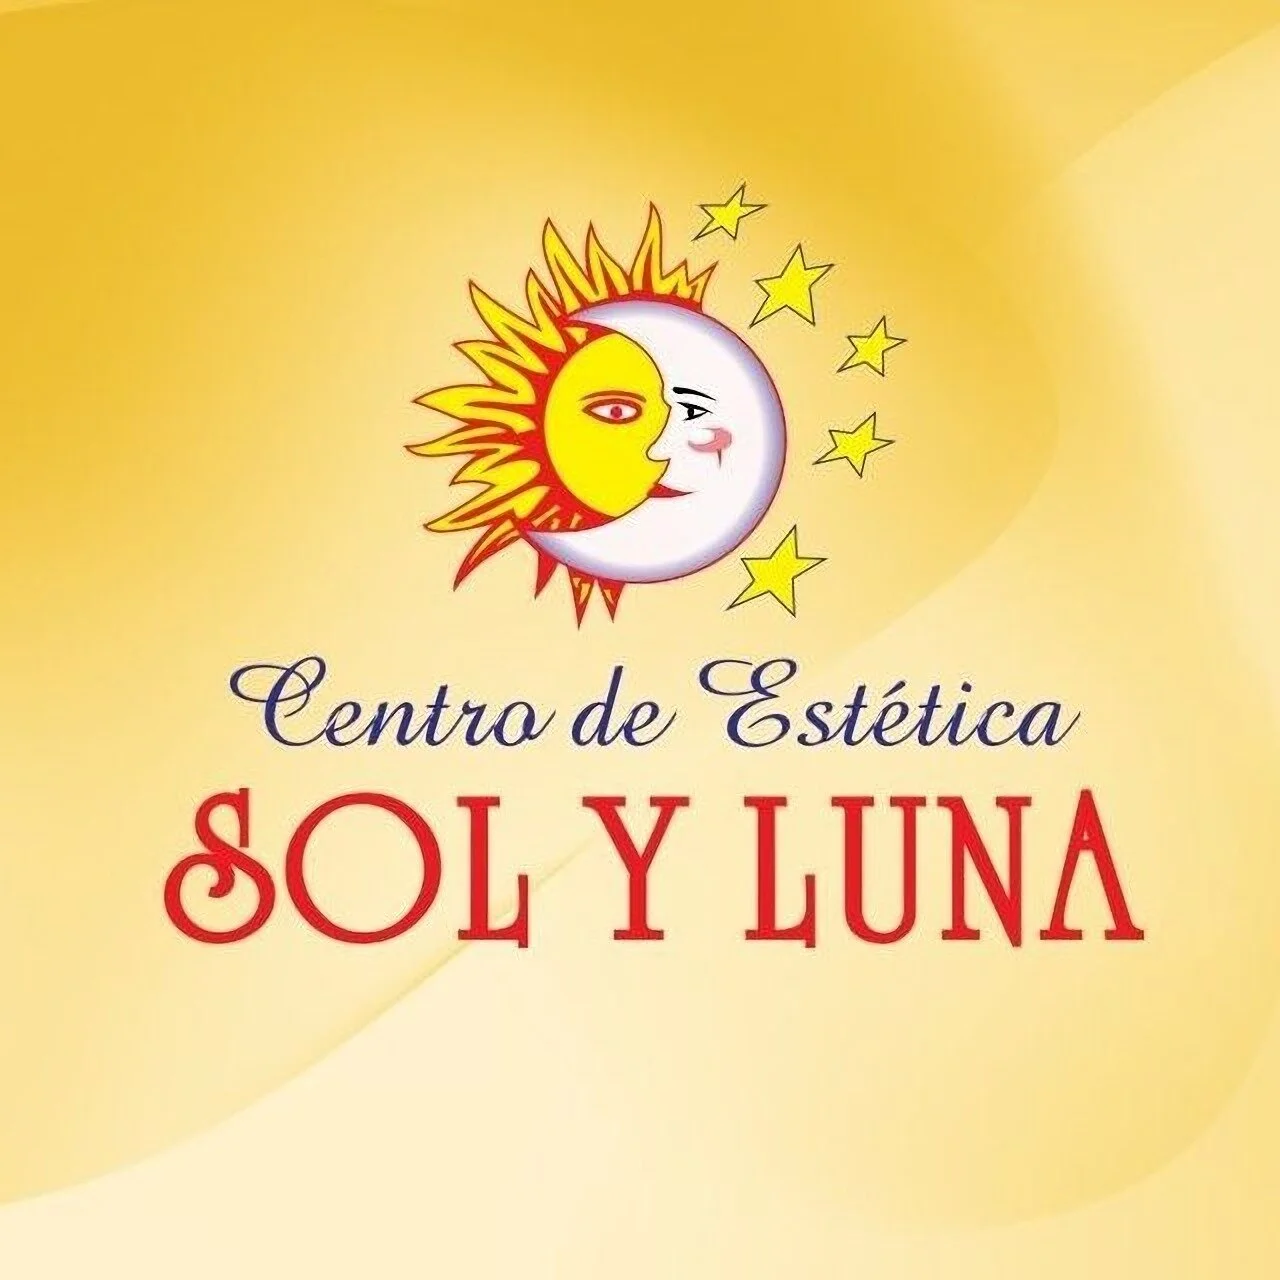 Centro de Estética y Spa Sol y Luna-948